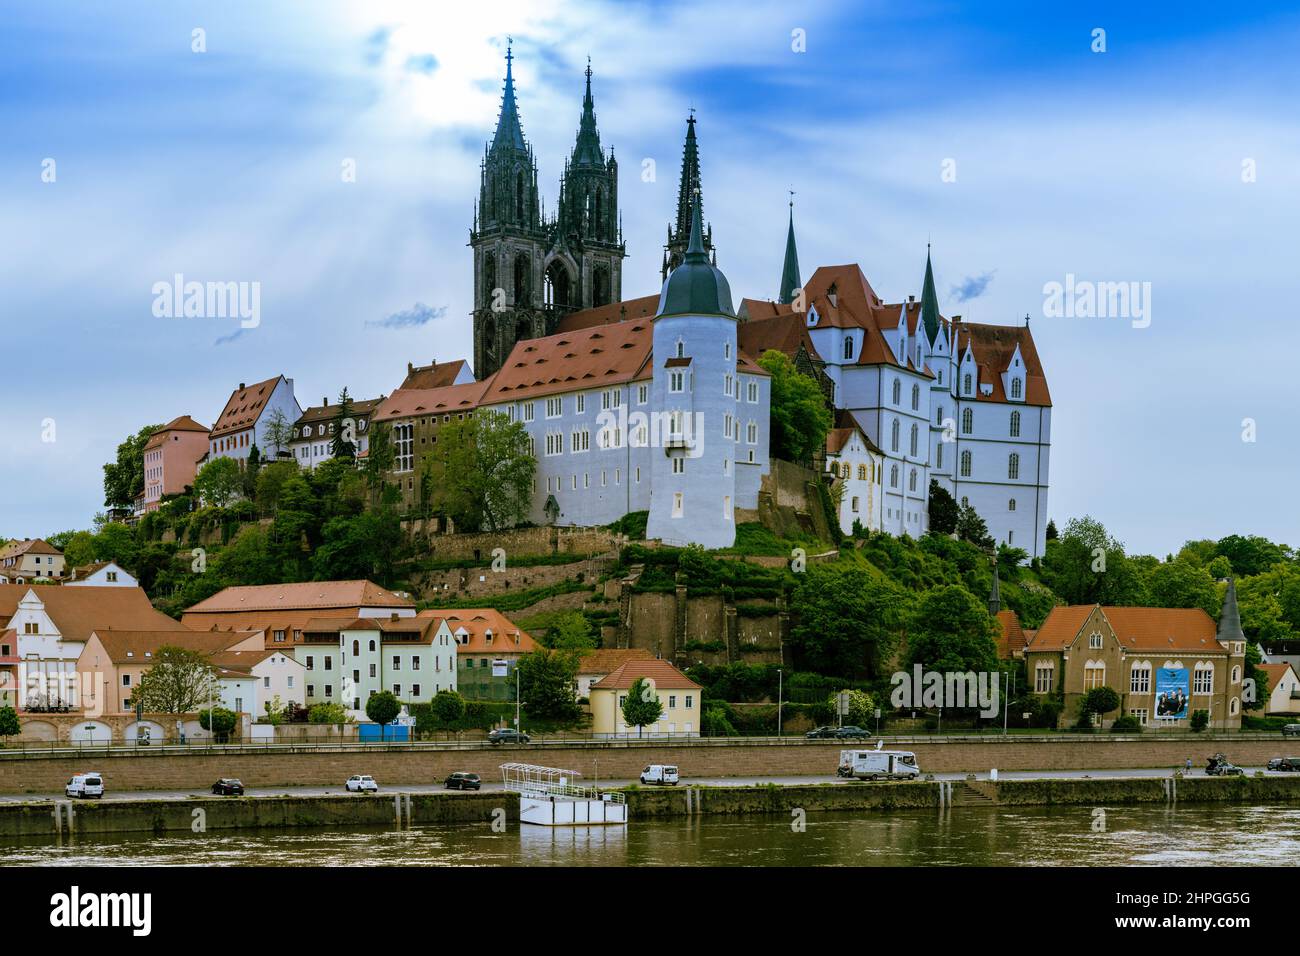 Die Albrechtsburg bei Meissen, eine der ältesten Burgen Deutschlands. Foto Stock